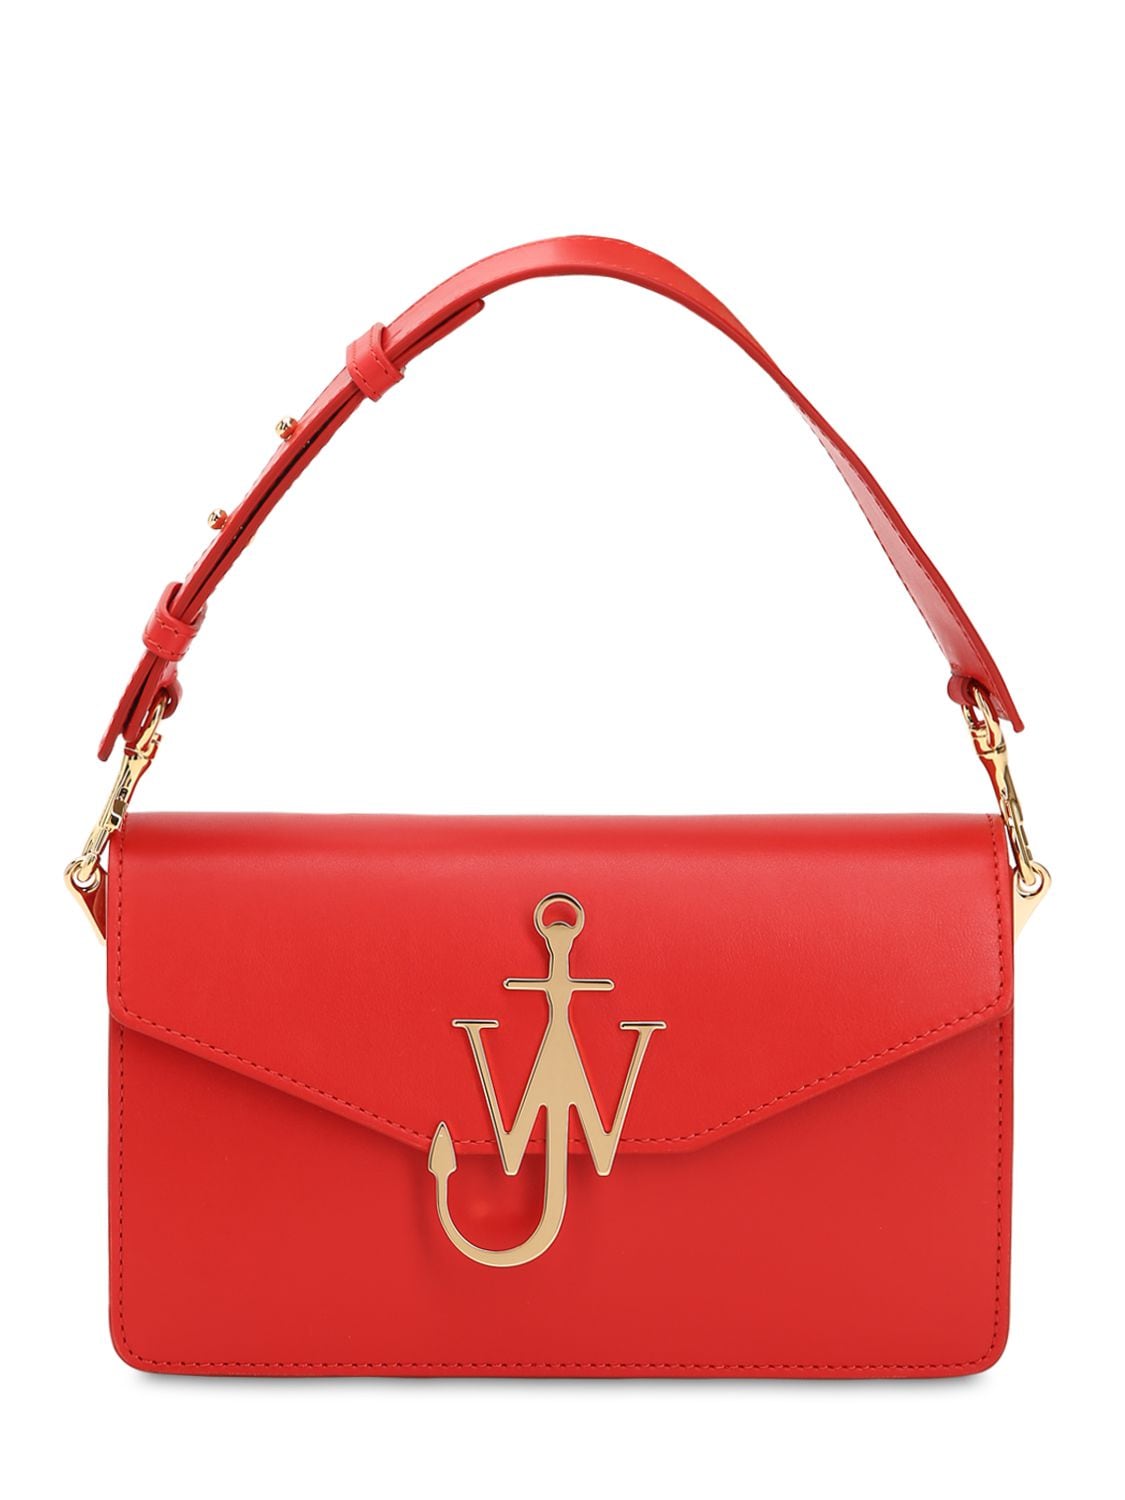 Jw Anderson Logo Leather Shoulder Bag In Red